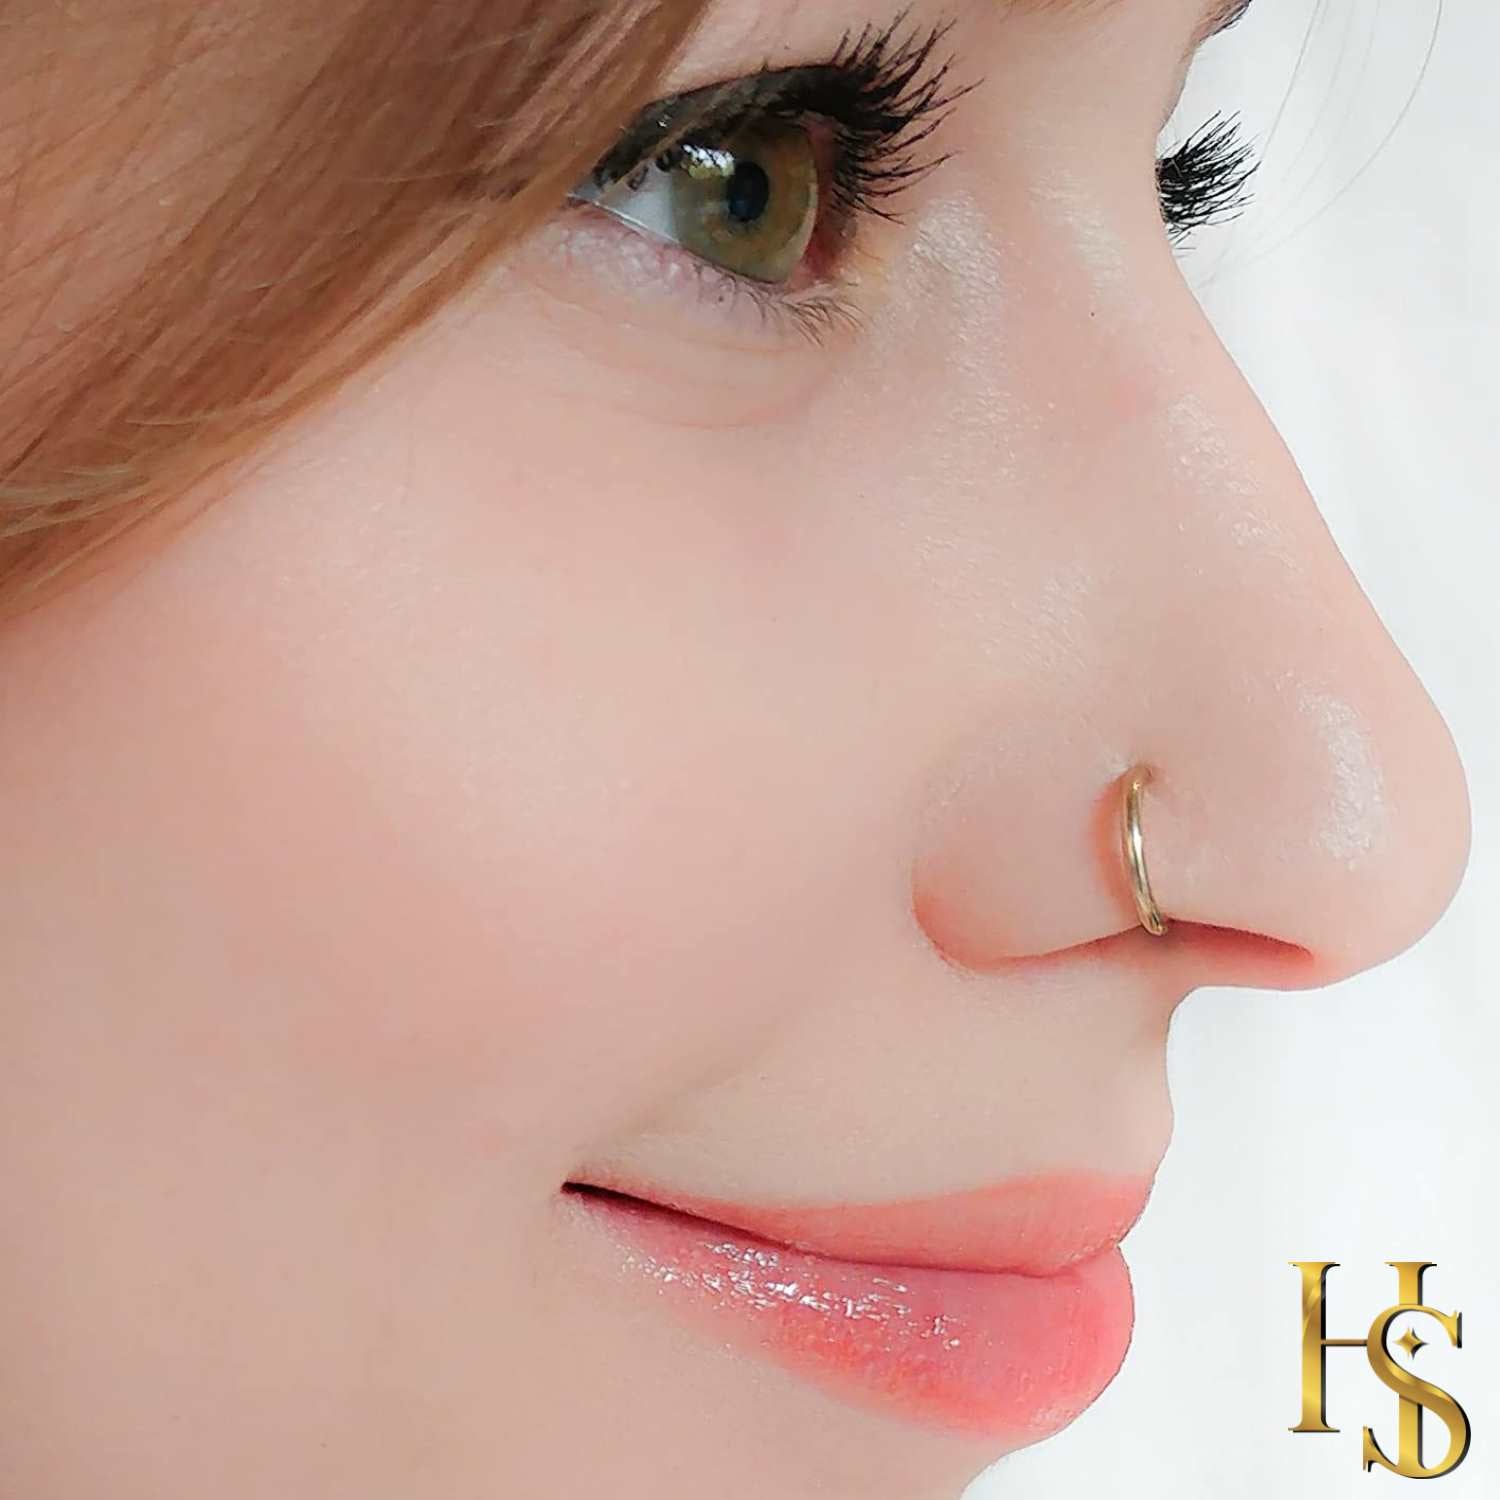 Gold Stud Nose Ring - Nose Piercing Stud By Ellie J Maui